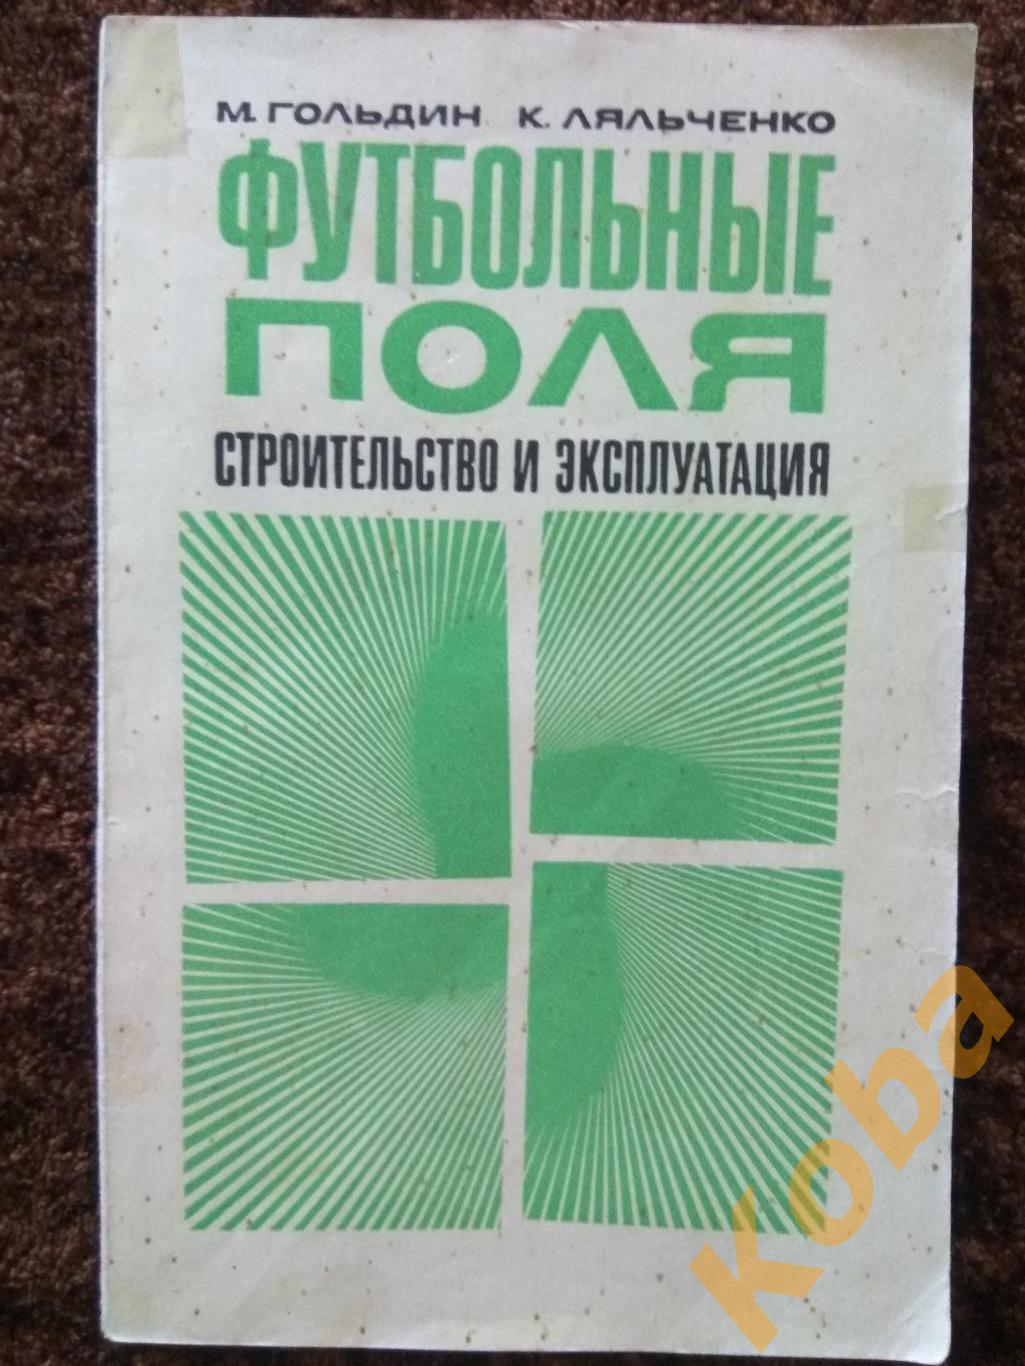 Футбольные поля строительство и эксплуатация 1971 Гольдин Ляльченко